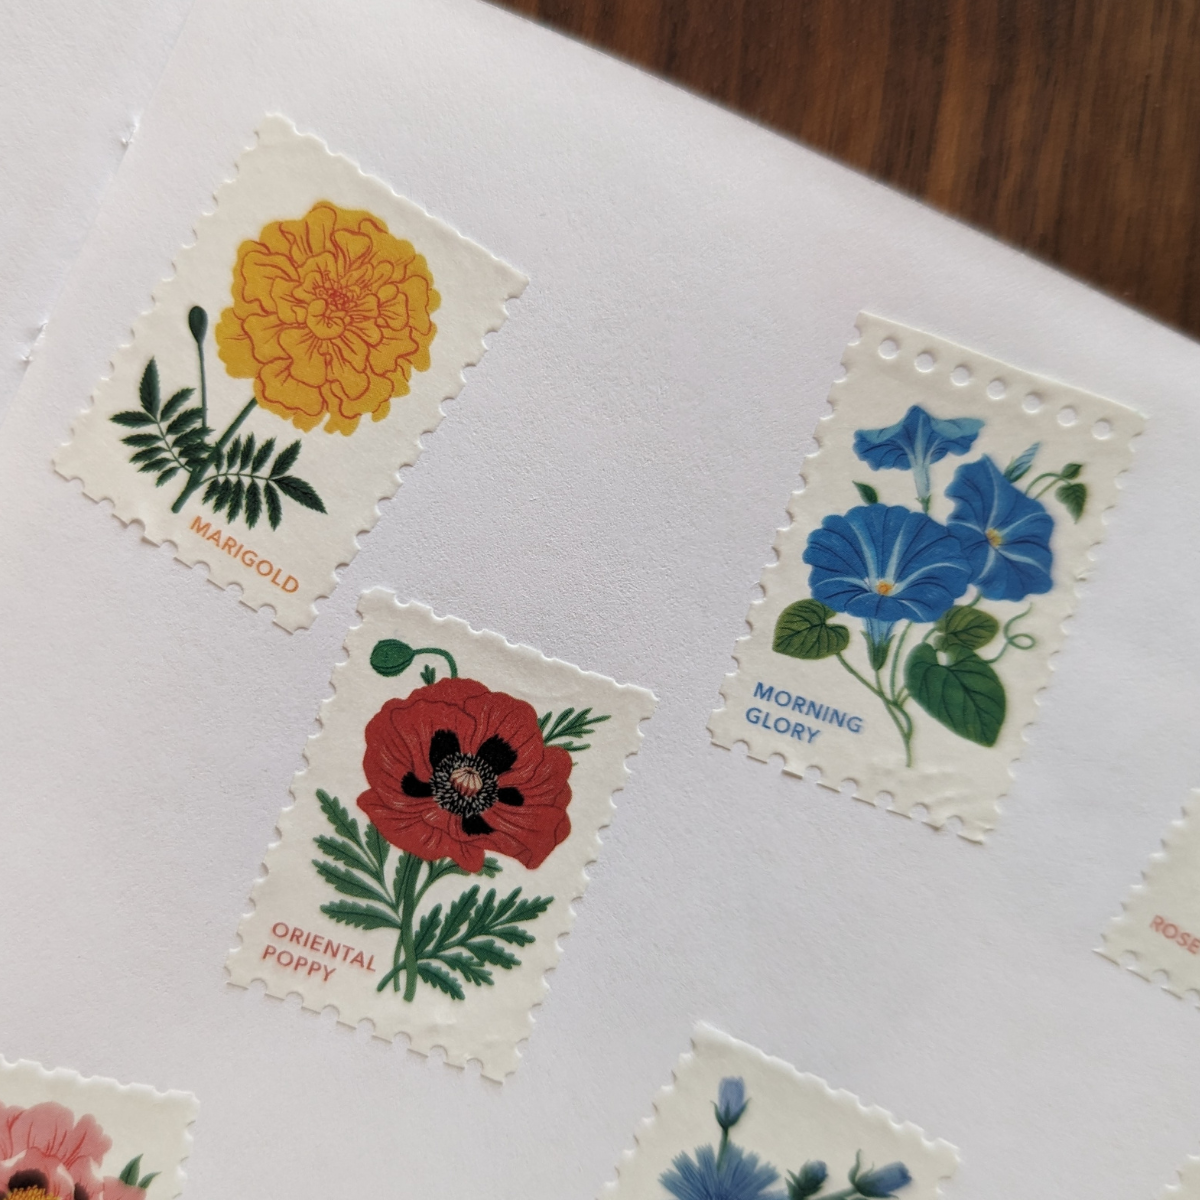 Ce masking tape de timbres prédécoupés de Botanica Paper présente 7 motifs différents de fleurs qui se répètent tout au long de la bobine.